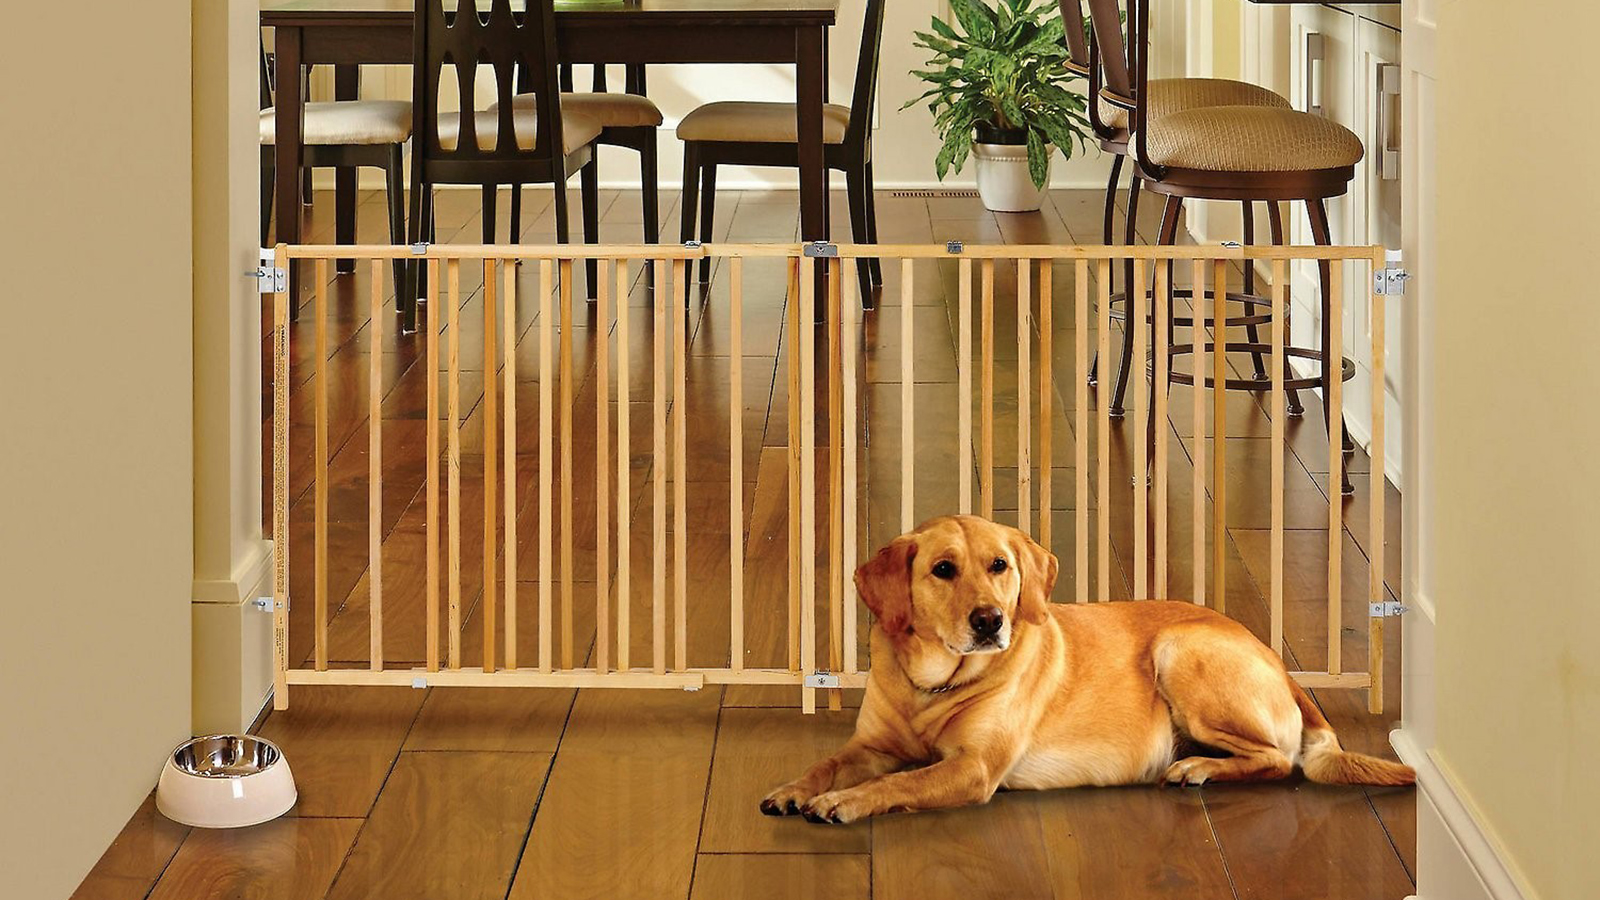 سگ در کنار موانع چوبی در خانه